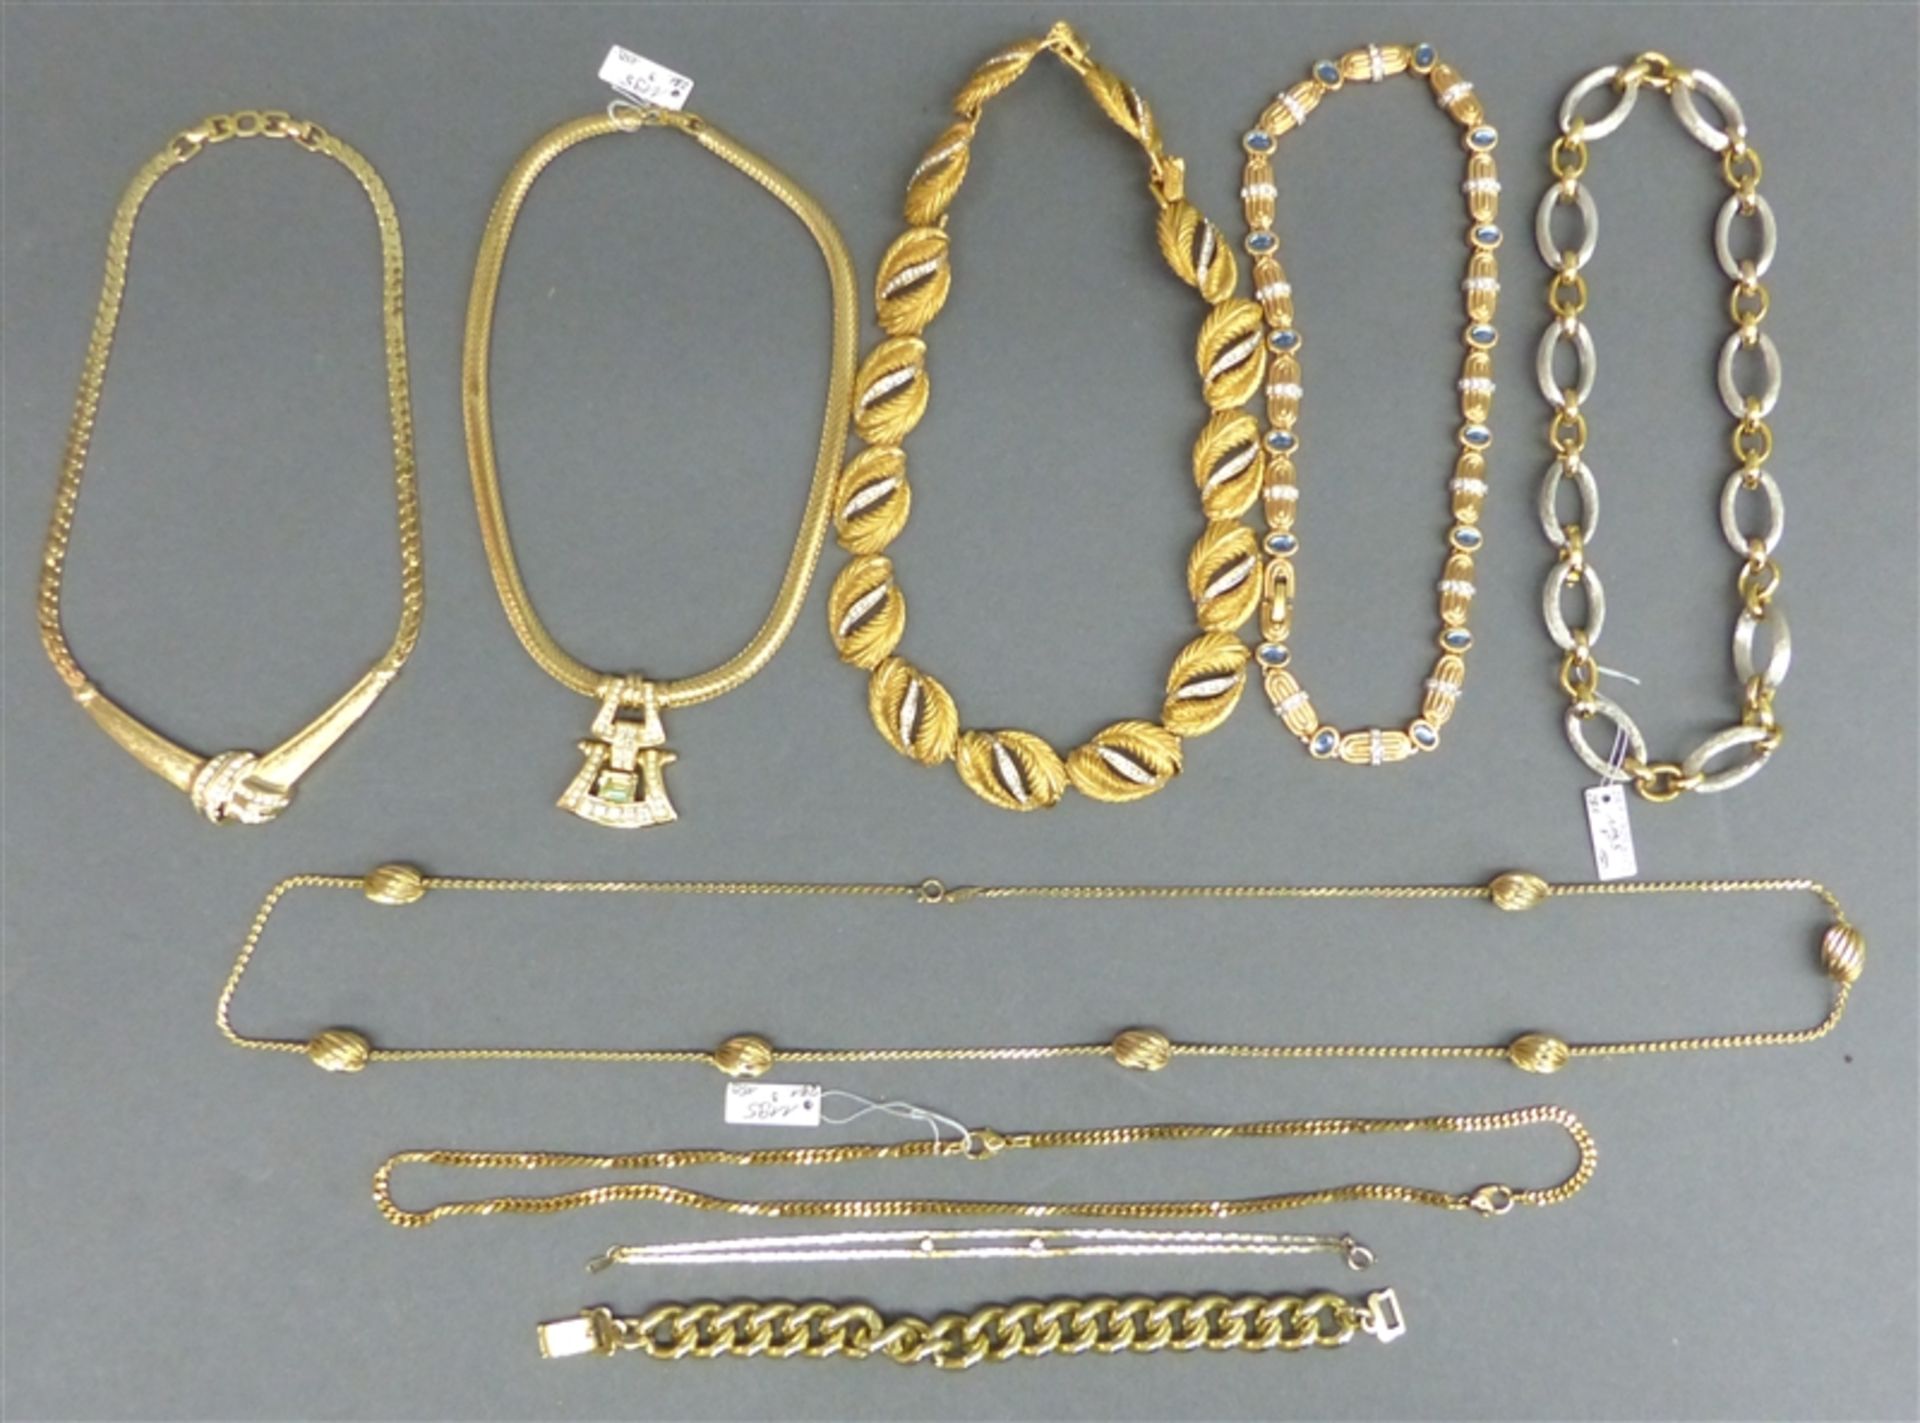 Konvolut Modeschmuck Metall, vergoldet, 6 Colliers, teilweise Steinbesatz, 2 Armbänder, 1